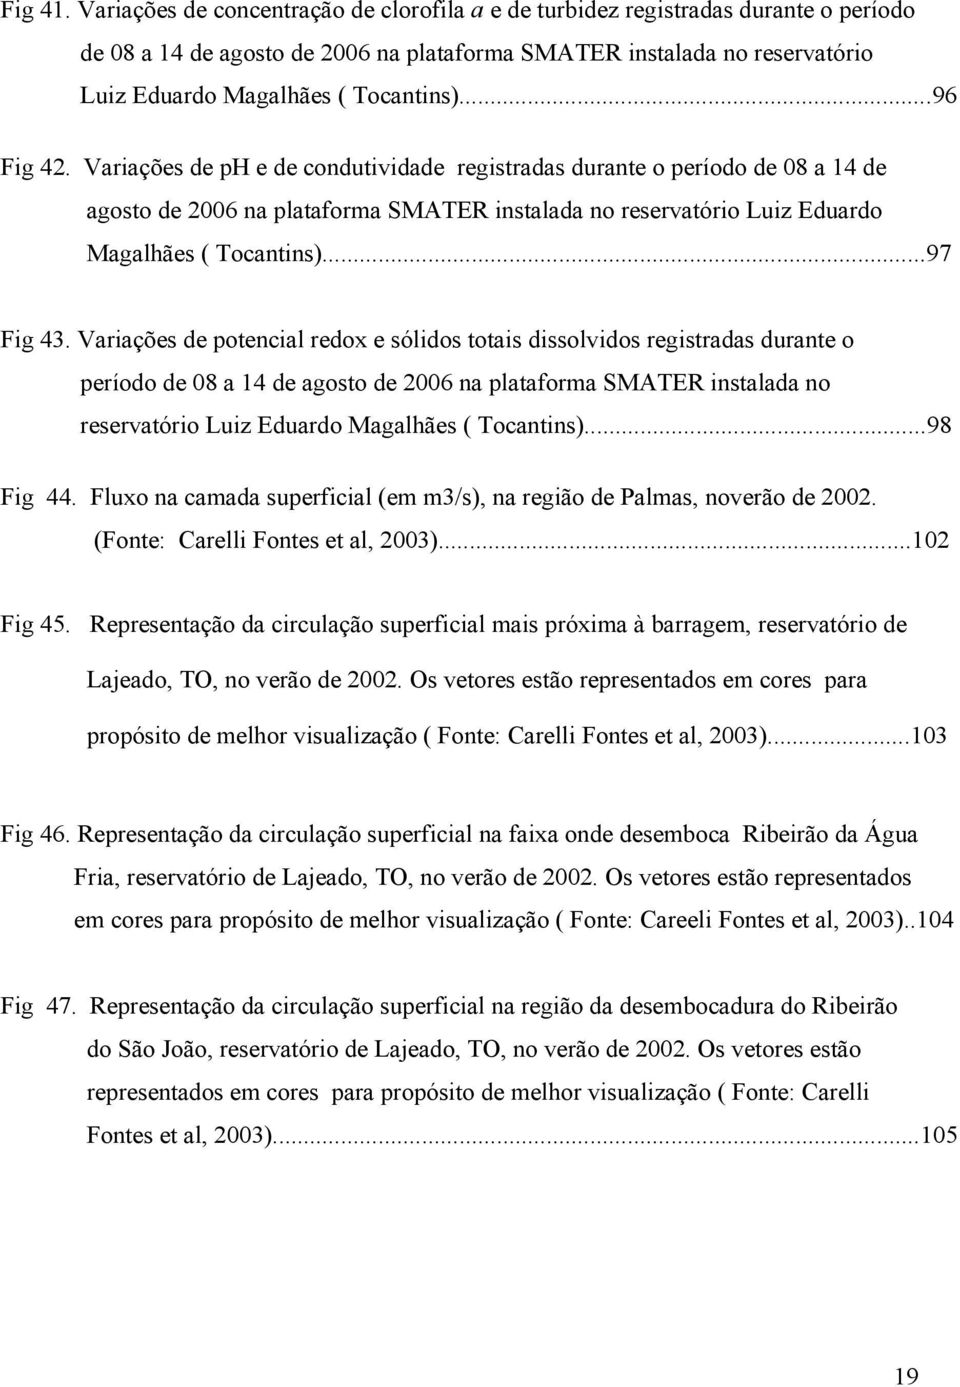 ..96 Fig 42. Variações de ph e de condutividade registradas durante o período de 08 a 14 de agosto de 2006 na plataforma SMATER instalada no reservatório Luiz Eduardo Magalhães ( Tocantins)...97 Fig 43.